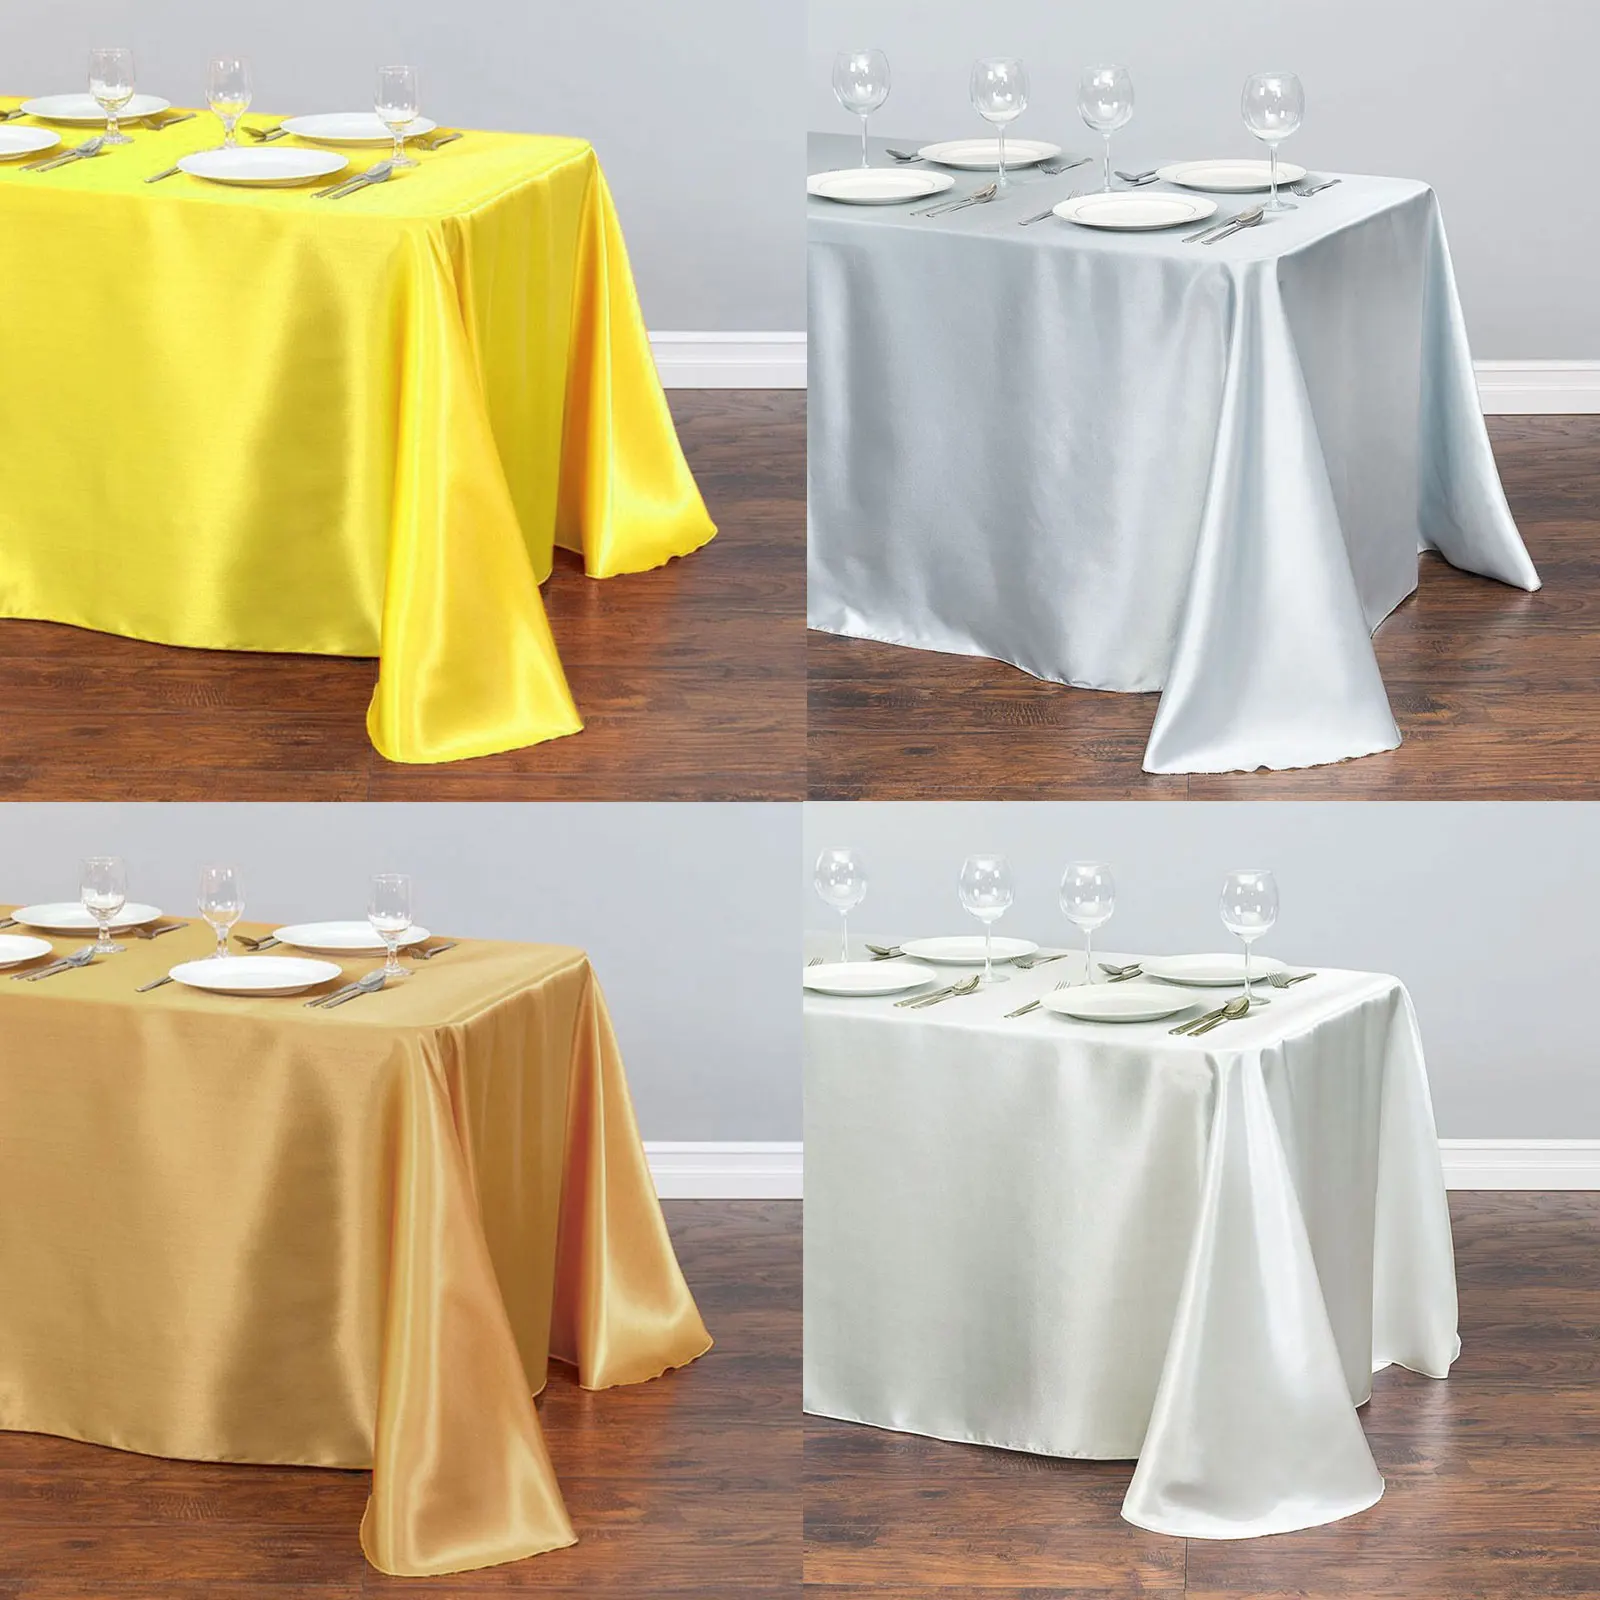 1 adet saten masa örtüsü Modern stil altın beyaz masa örtüsü noel düğün partisi masa örtüsü kırmızı masa örtüsü ev dekor